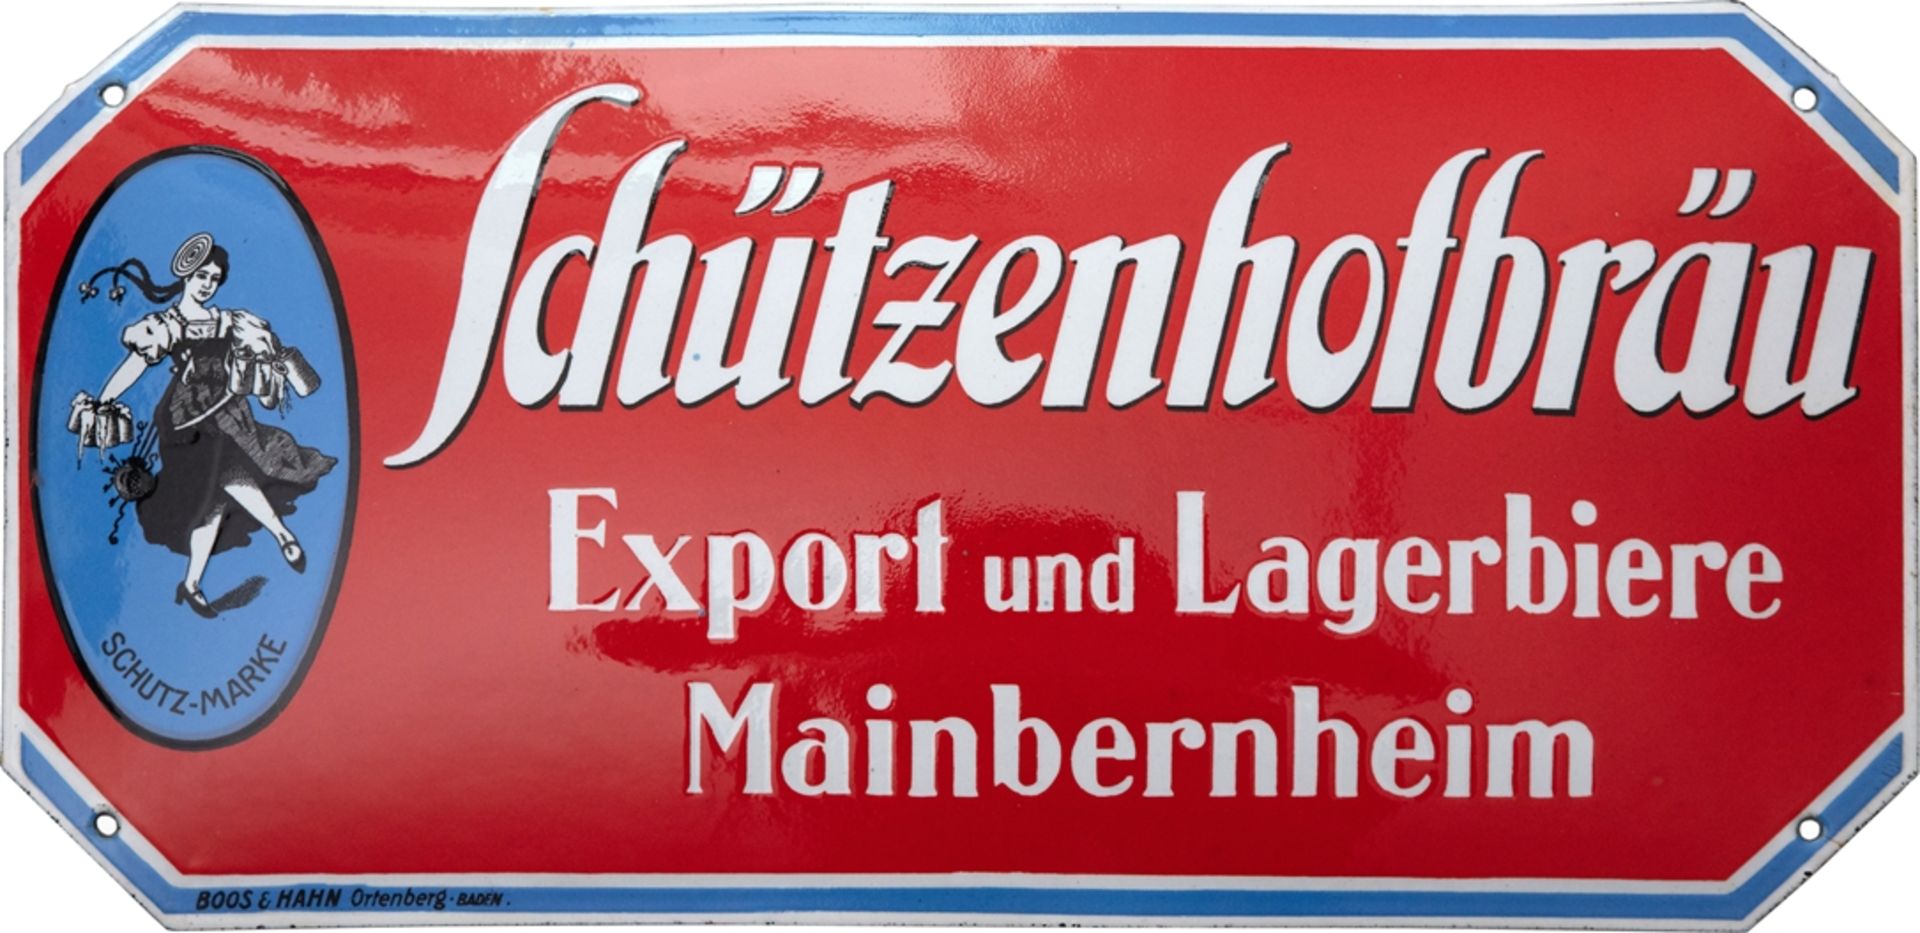 Enamel sign Schützenhofbräu, dream condition! Mainbernheim near Kitzingen, around 1920